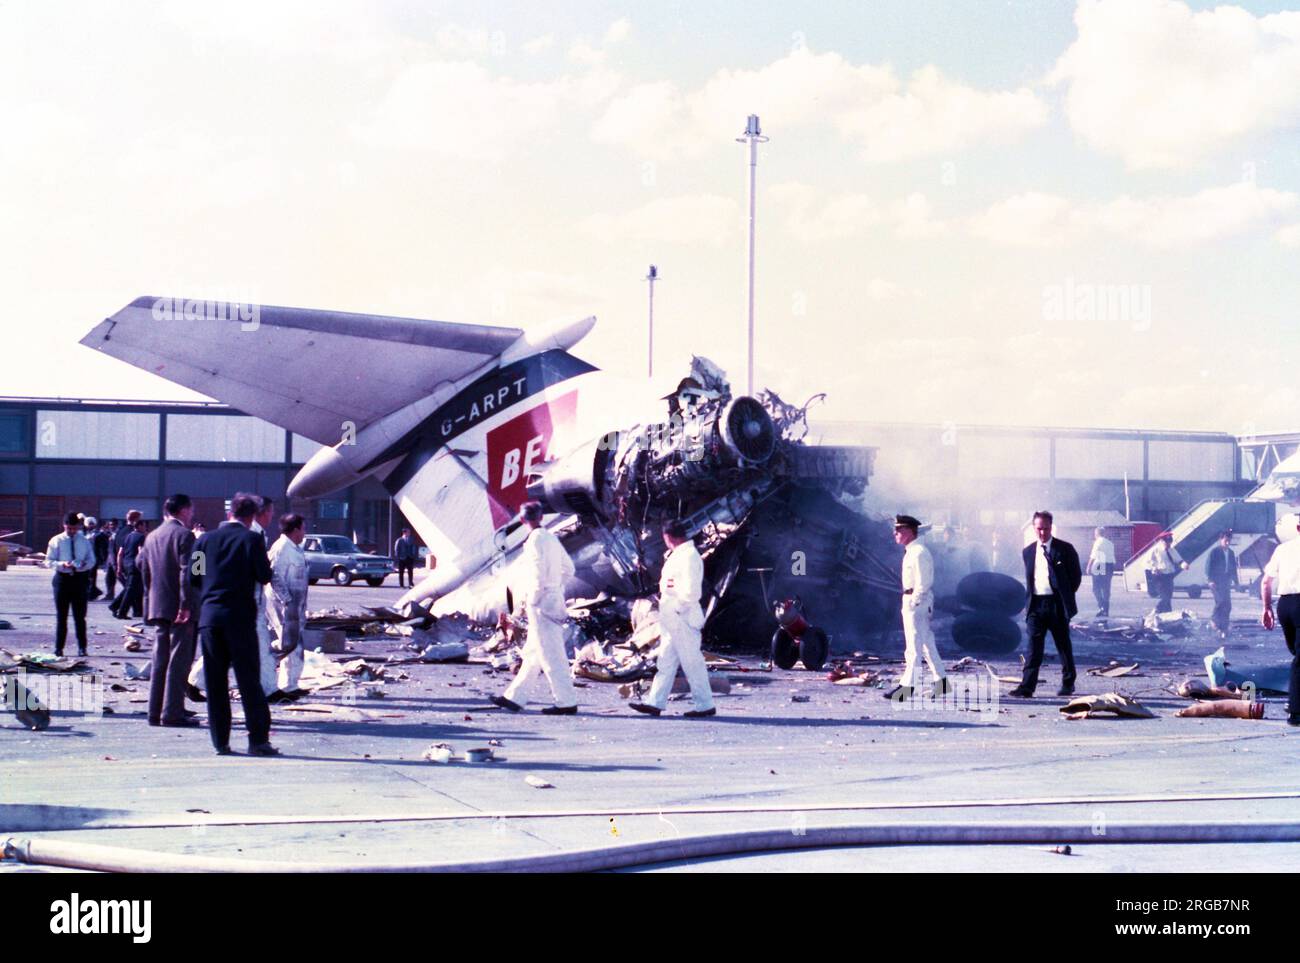 Hawker Siddeley Trident 1C G-ARPT (msn 2121), della British European Airways, all'aeroporto di Heathrow, dopo il crollo del BKS Air Transport Airspeed Ambassador G-AMAD il 3 luglio 1968. L'Ambasciatore di velocità aerea, G-AMAD, volava un carico di 8 cavalli da Deauville a Londra. Quando ci si avvicina alla soglia della pista 28R all'aeroporto di Londra, l'ala sinistra è improvvisamente caduta. La punta ad alette, seguita dalle ruote dentate principali di sinistra, toccava l'erba a sinistra della pista. L'equipaggio ha cercato di aumentare la potenza per andare in giro, ma l'aereo ha volato con un angolo di banca crescente. L'aereo colpì due BEA HS-121 parcheggiati Foto Stock